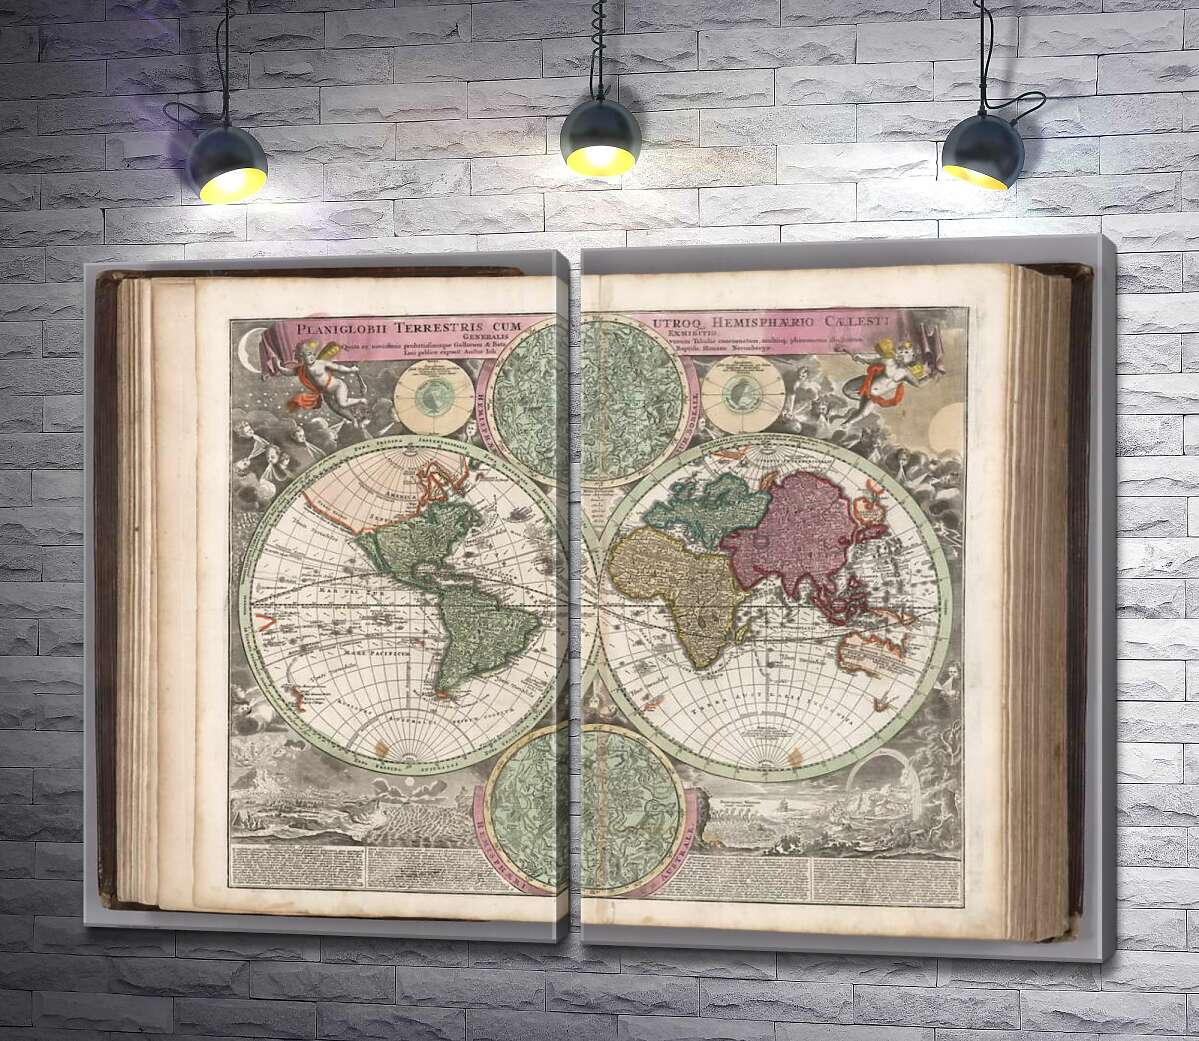 модульна картина Карта півкуль Землі 1707 року в атласі німецького картографа Йоганна-Баптиста Гоммана (Johann Baptist Homann)